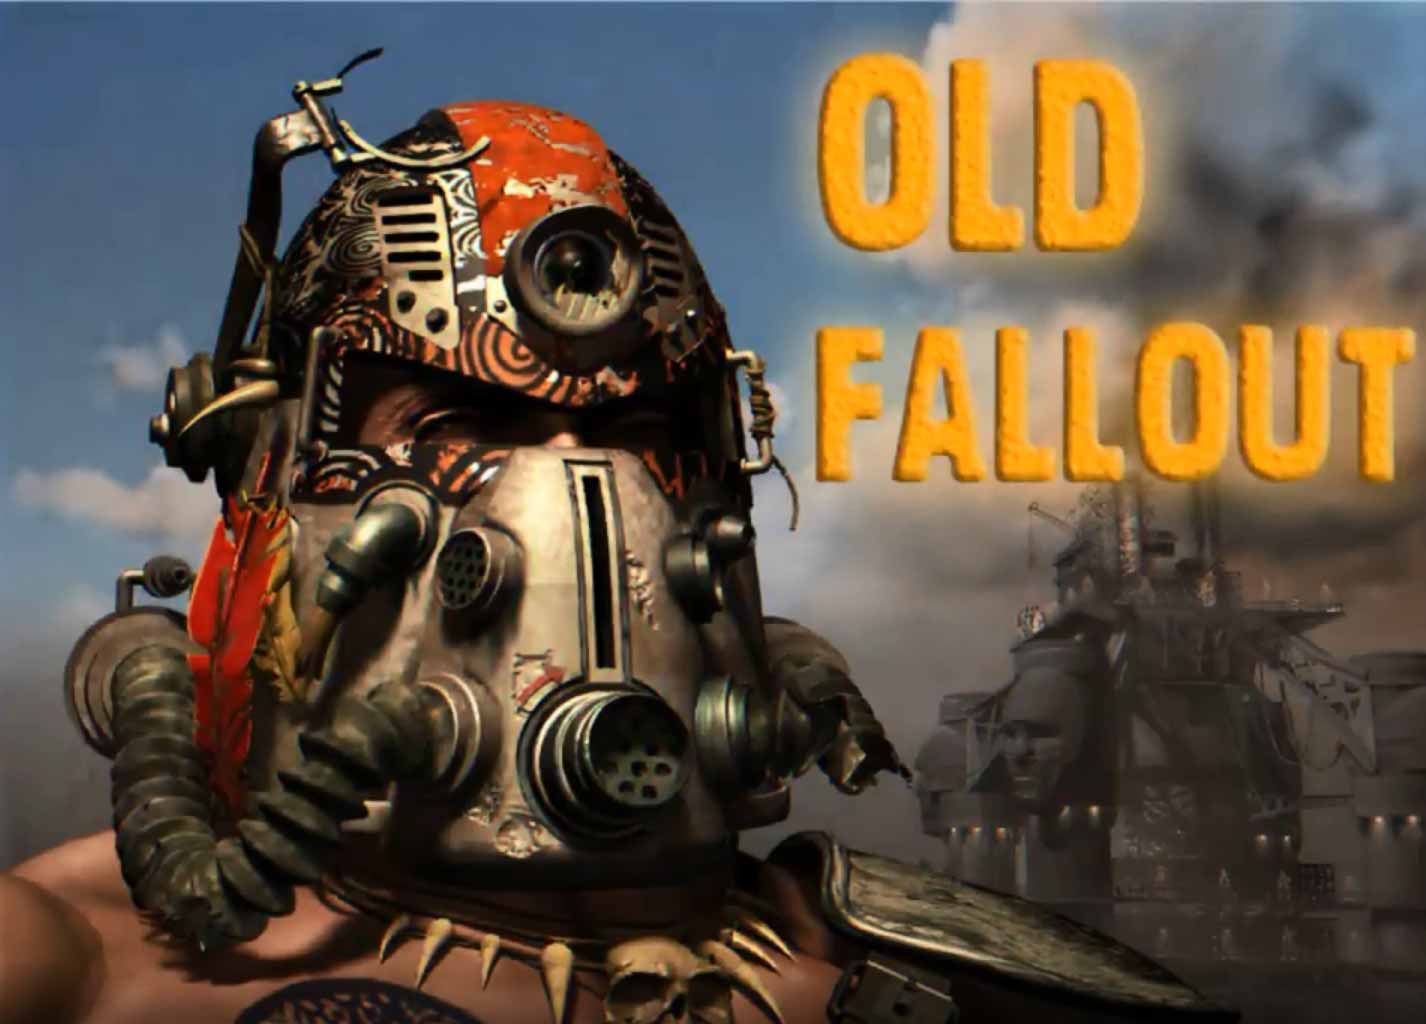 Fallout 2D Gatling Laser фанатский мод старой оригинальной игры